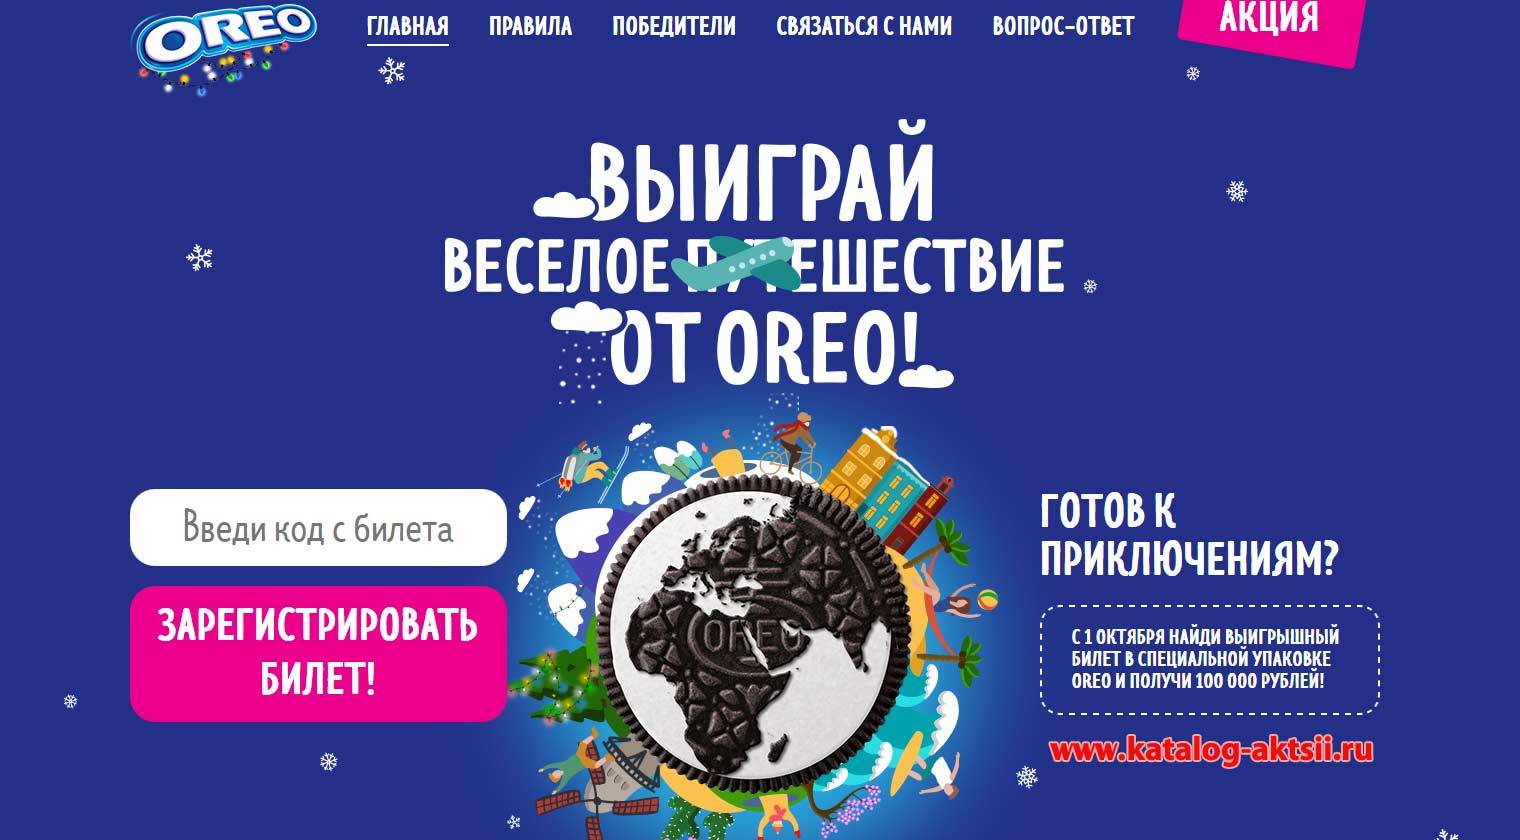 bilet.oreo.ru зарегистрировать билет